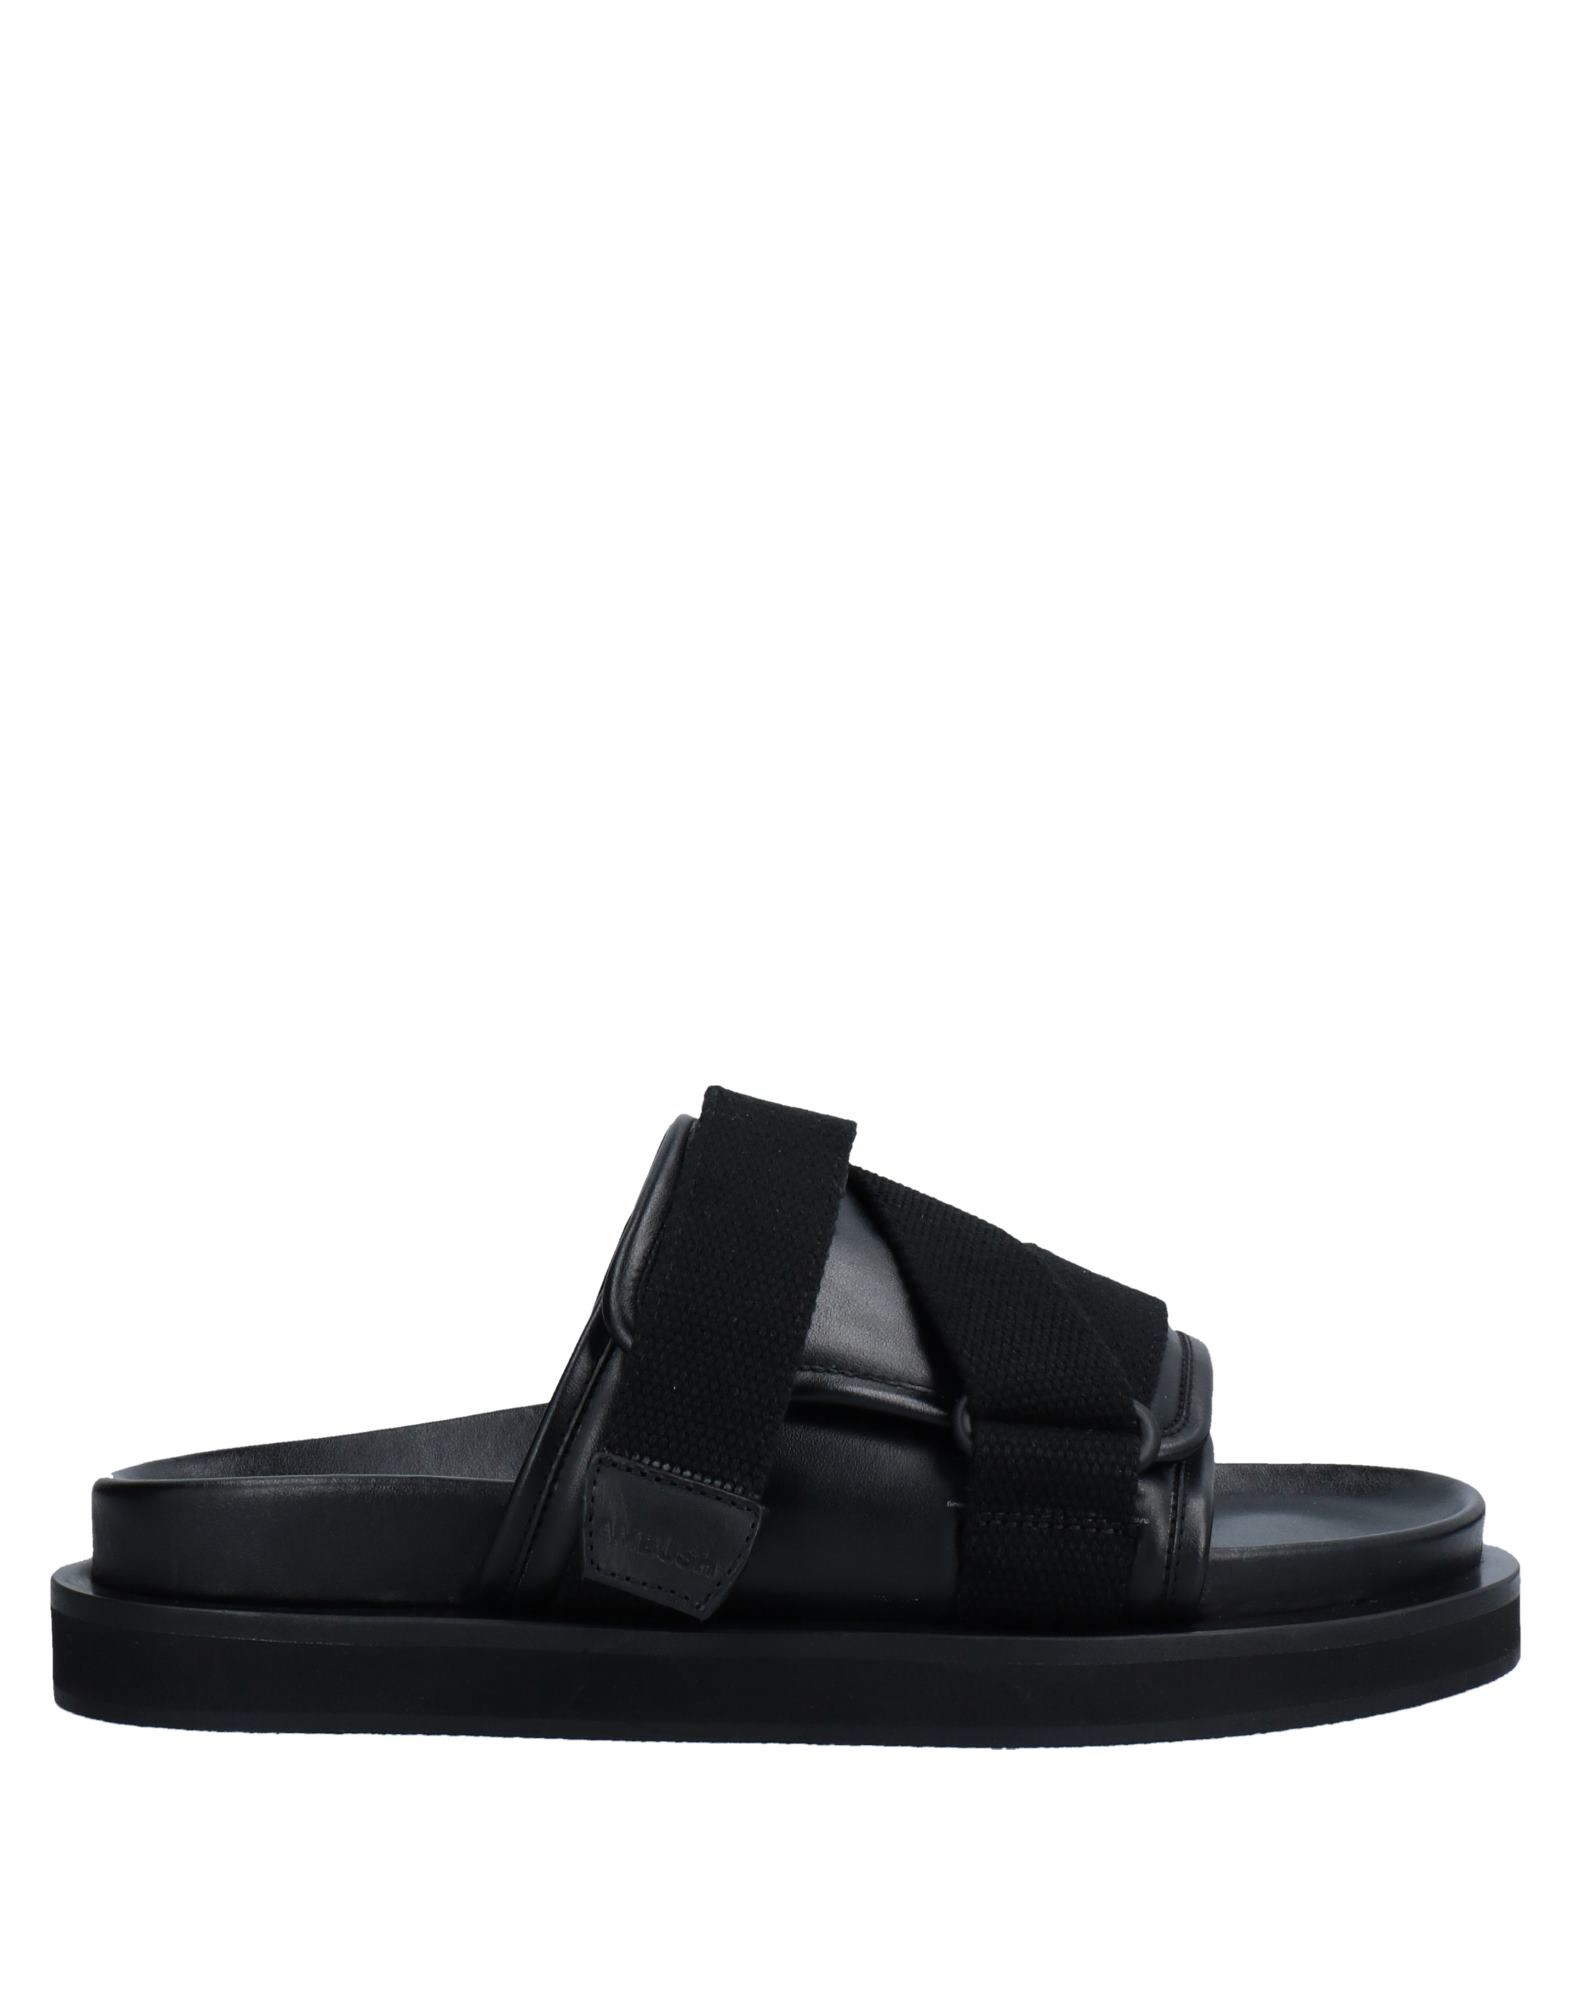 Shop Ambush Man Sandals Black Size 7 Soft Leather